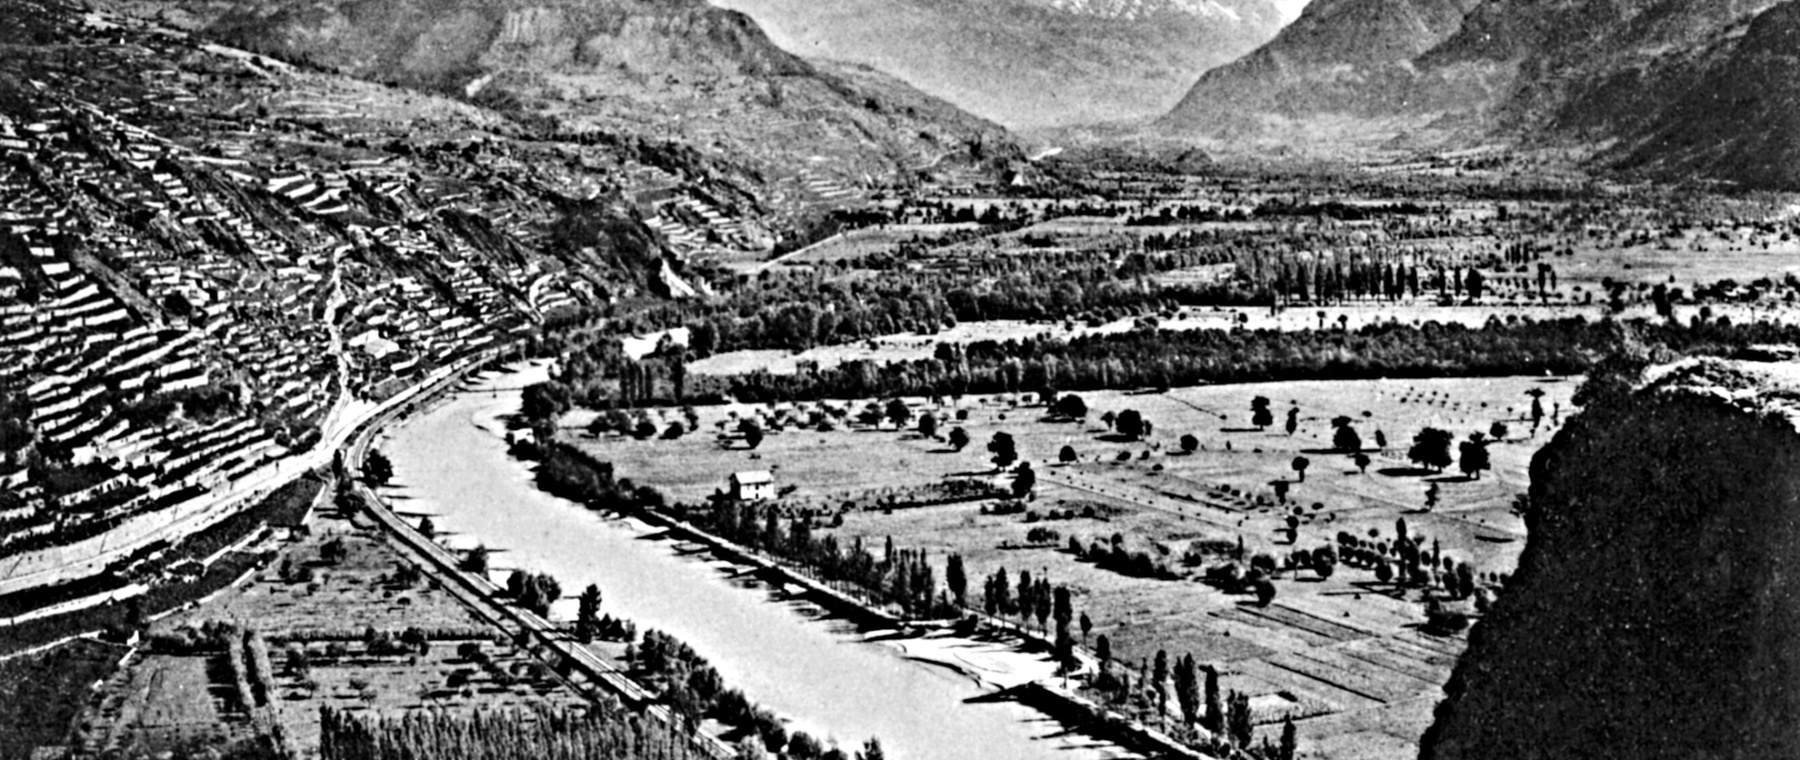 Vallee du Rhone et vue generale, Sion 1900 © Bourgeoisie de Sion Mediatheque Valais Martigny.jpg